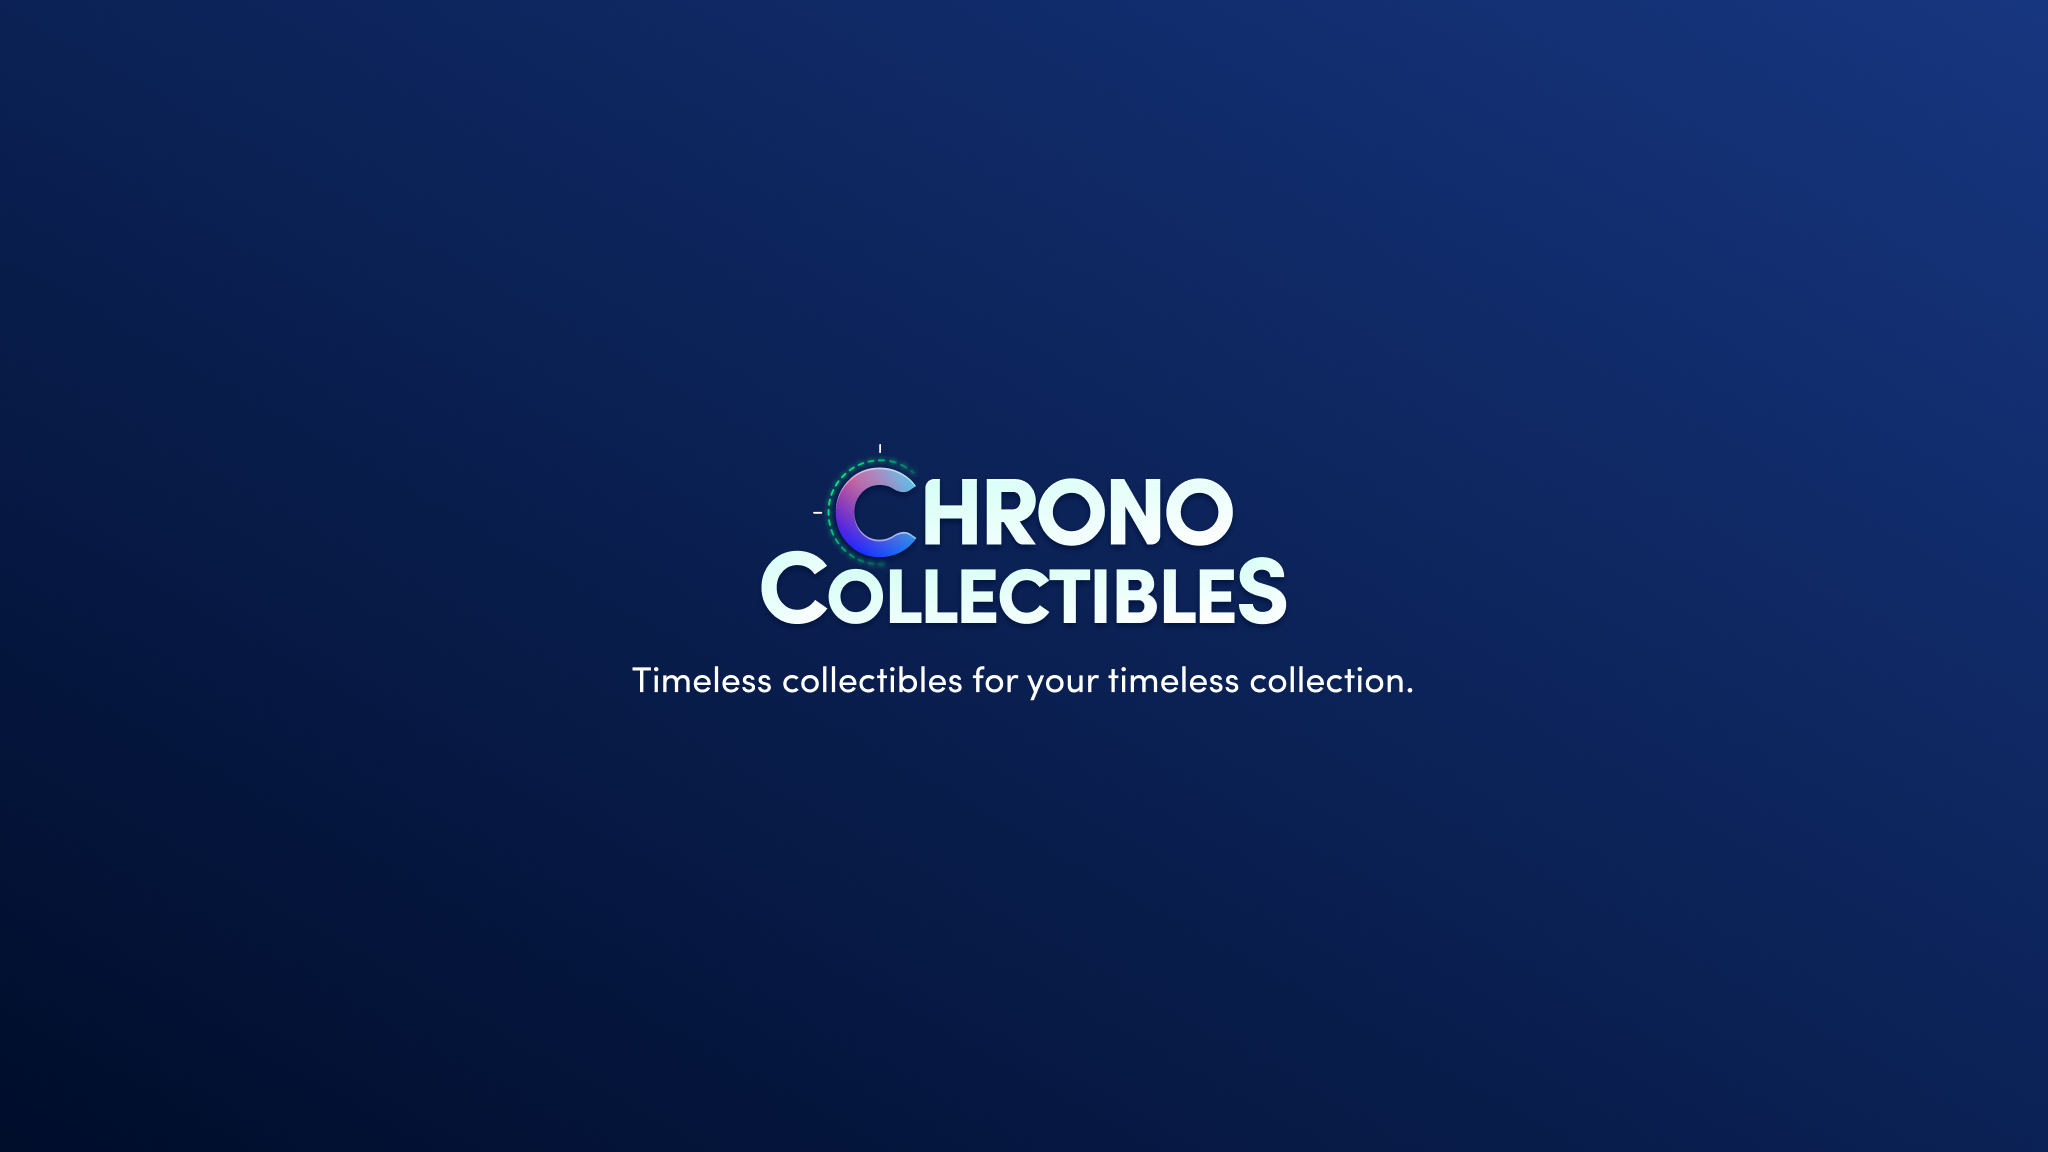 Chrono Collectibles